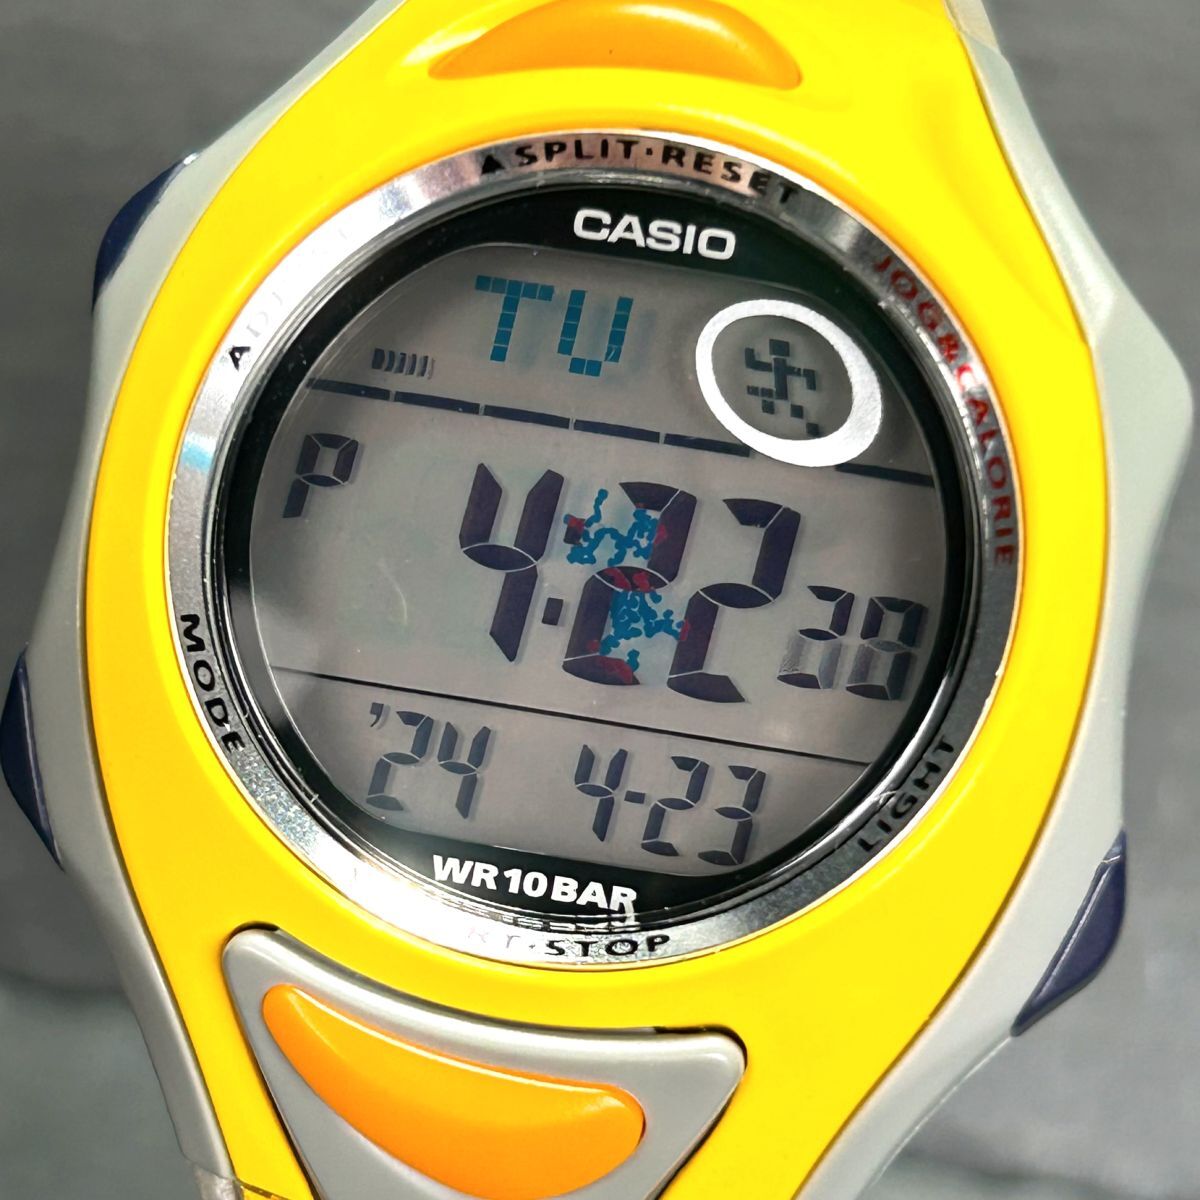 コナミスポーツクラブコラボ 美品 CASIO カシオ スポーツギア PHYS STR-111-9V 腕時計 クオーツ デジタル 多機能 イエロー 新品電池交換済